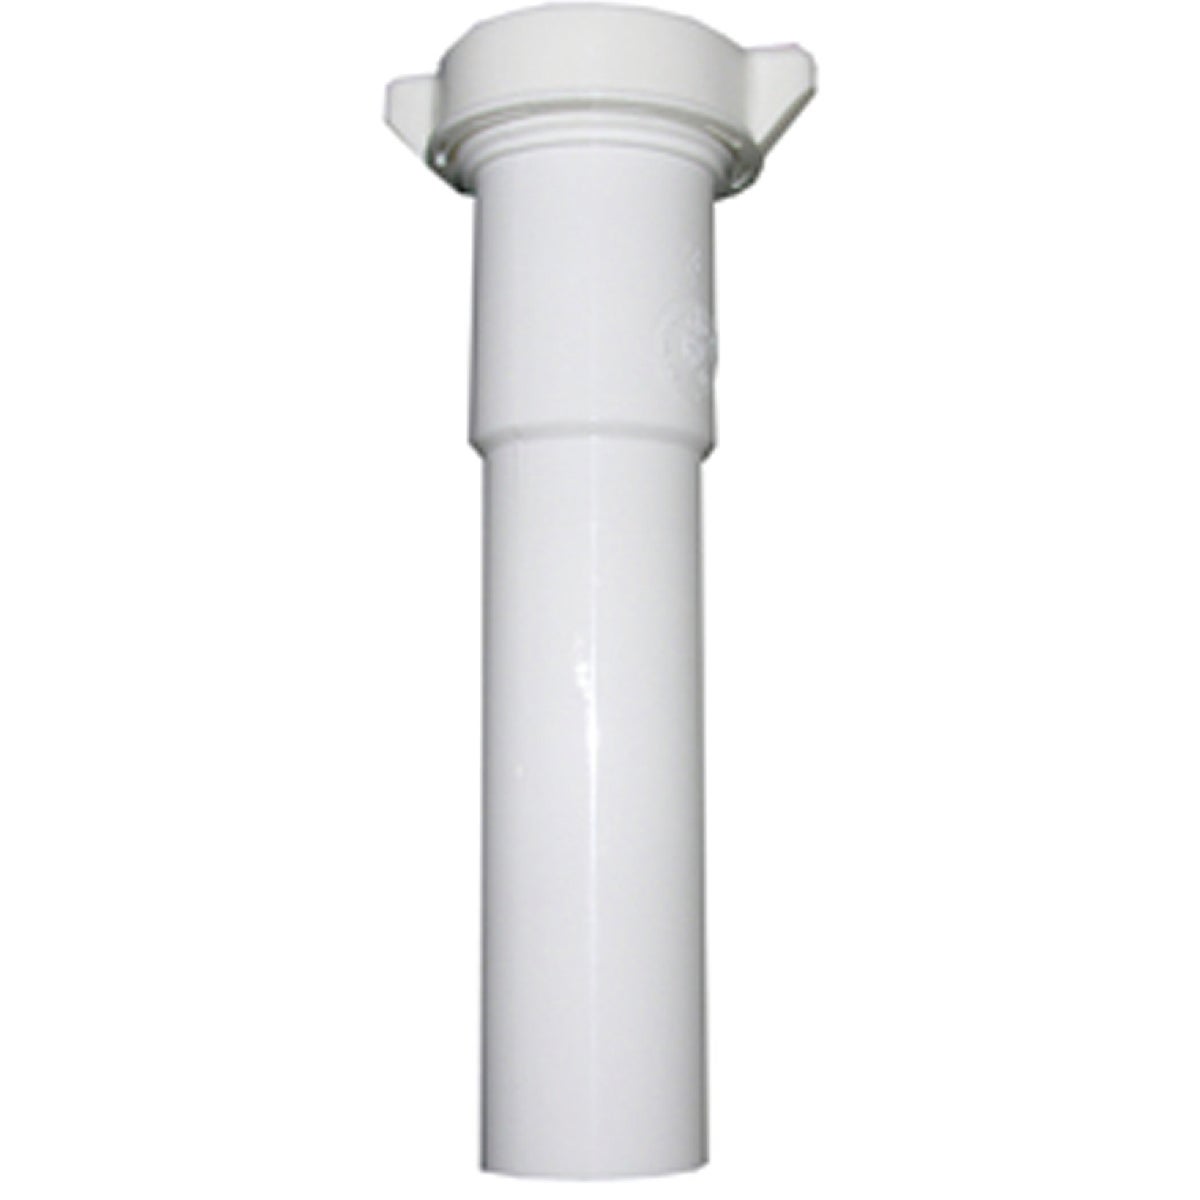 Lasco 1-1/4 In. OD x 12 In. L White Plastic Extension Tube